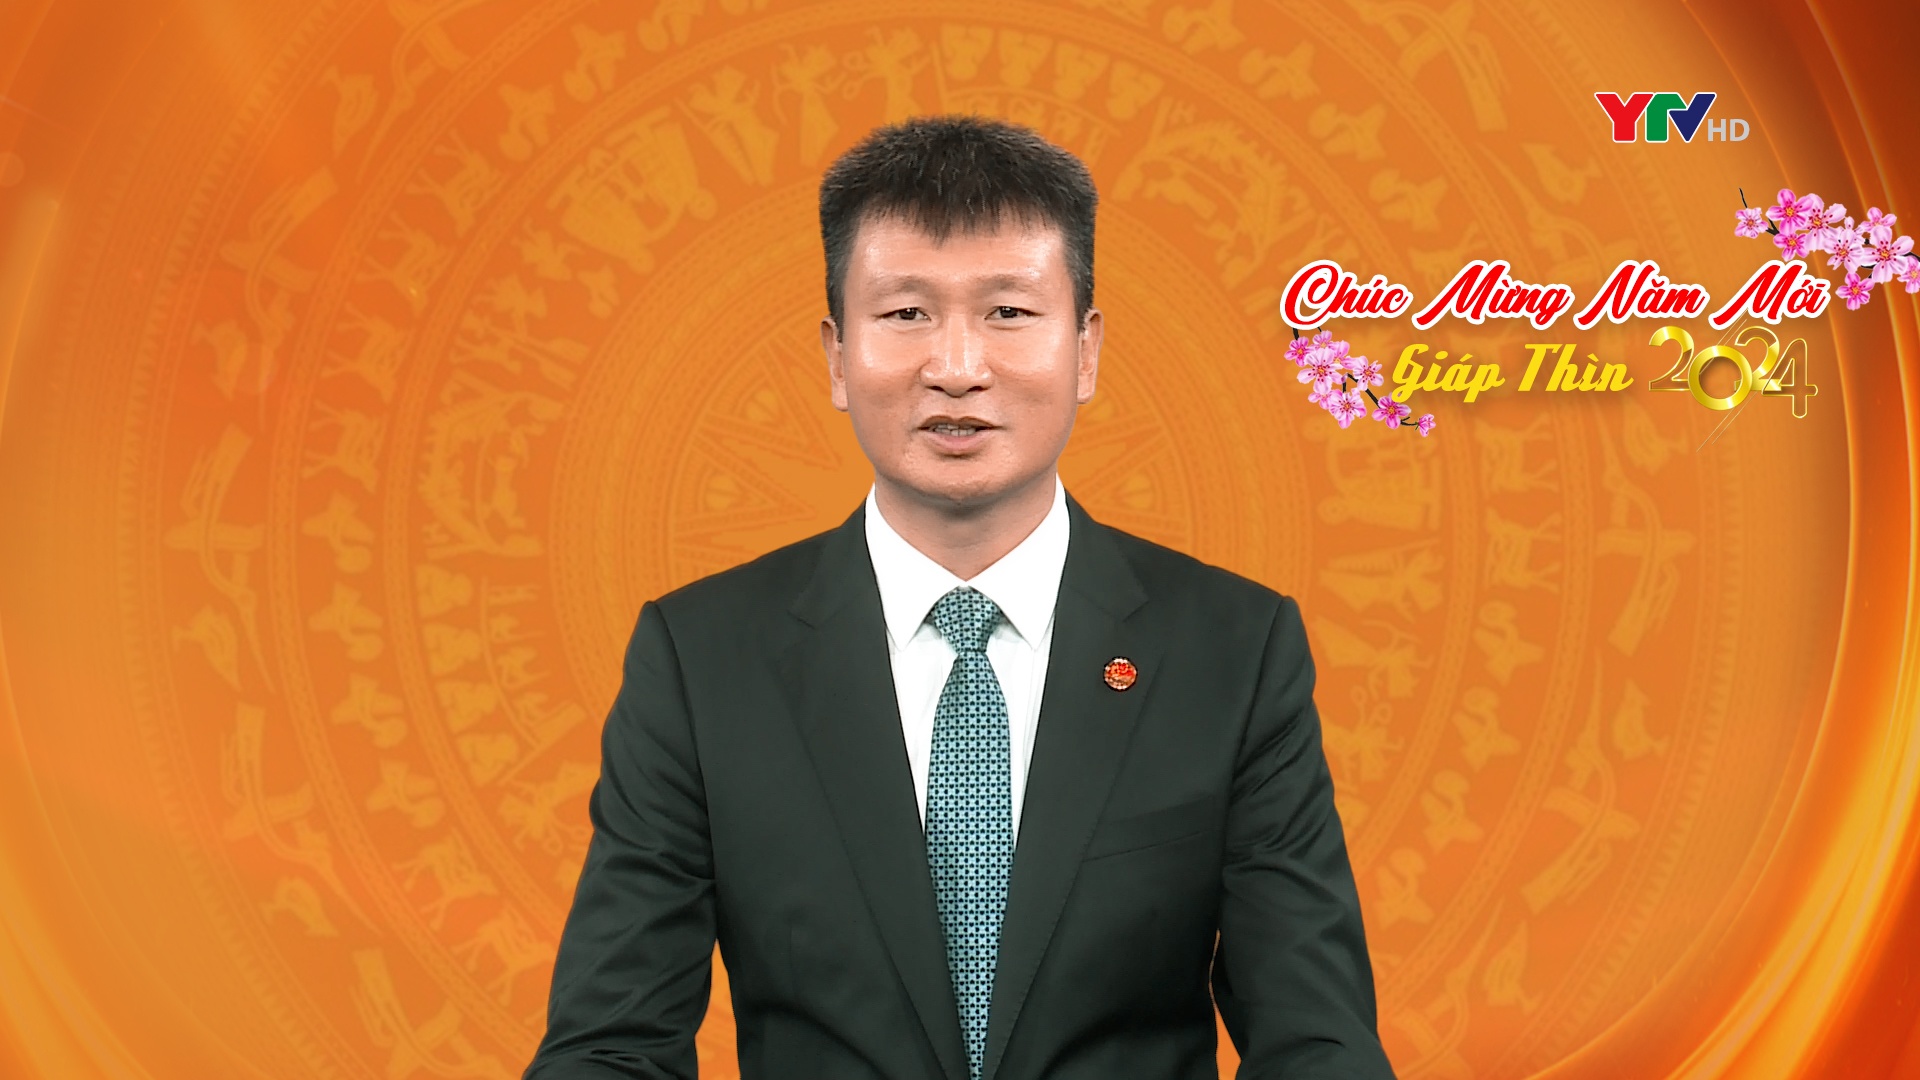 Lời chúc Tết của đồng chí Chủ tịch UBND tỉnh Trần Huy Tuấn nhân dịp Xuân Giáp Thìn 2024